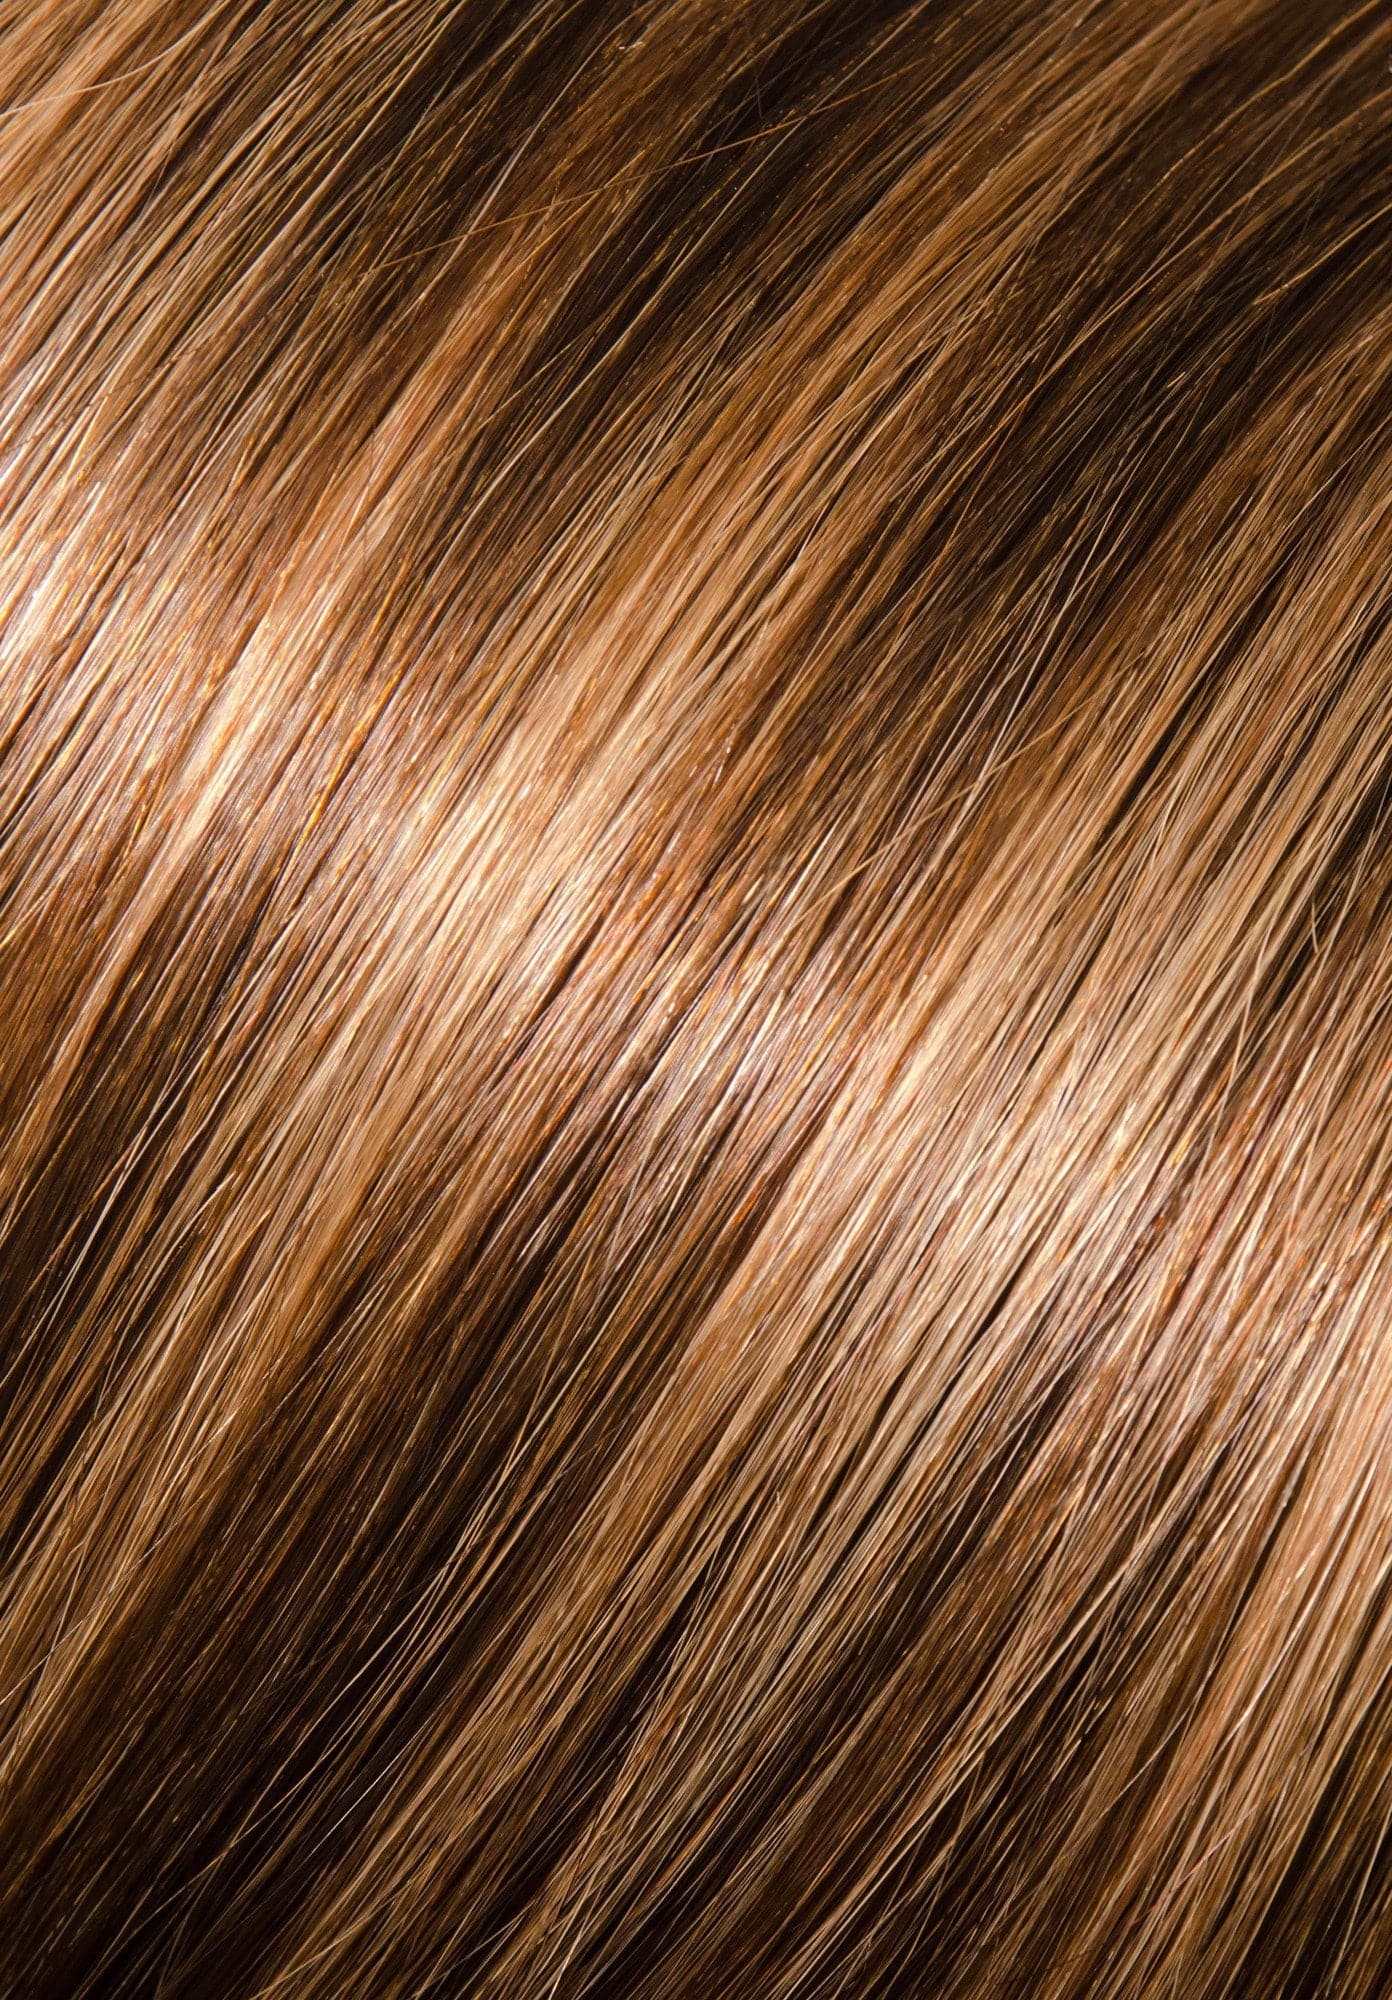 16" I-Link Pro Straight #6/10 (Dark Chestnut/Medium Ash) - Donna Bella Hair